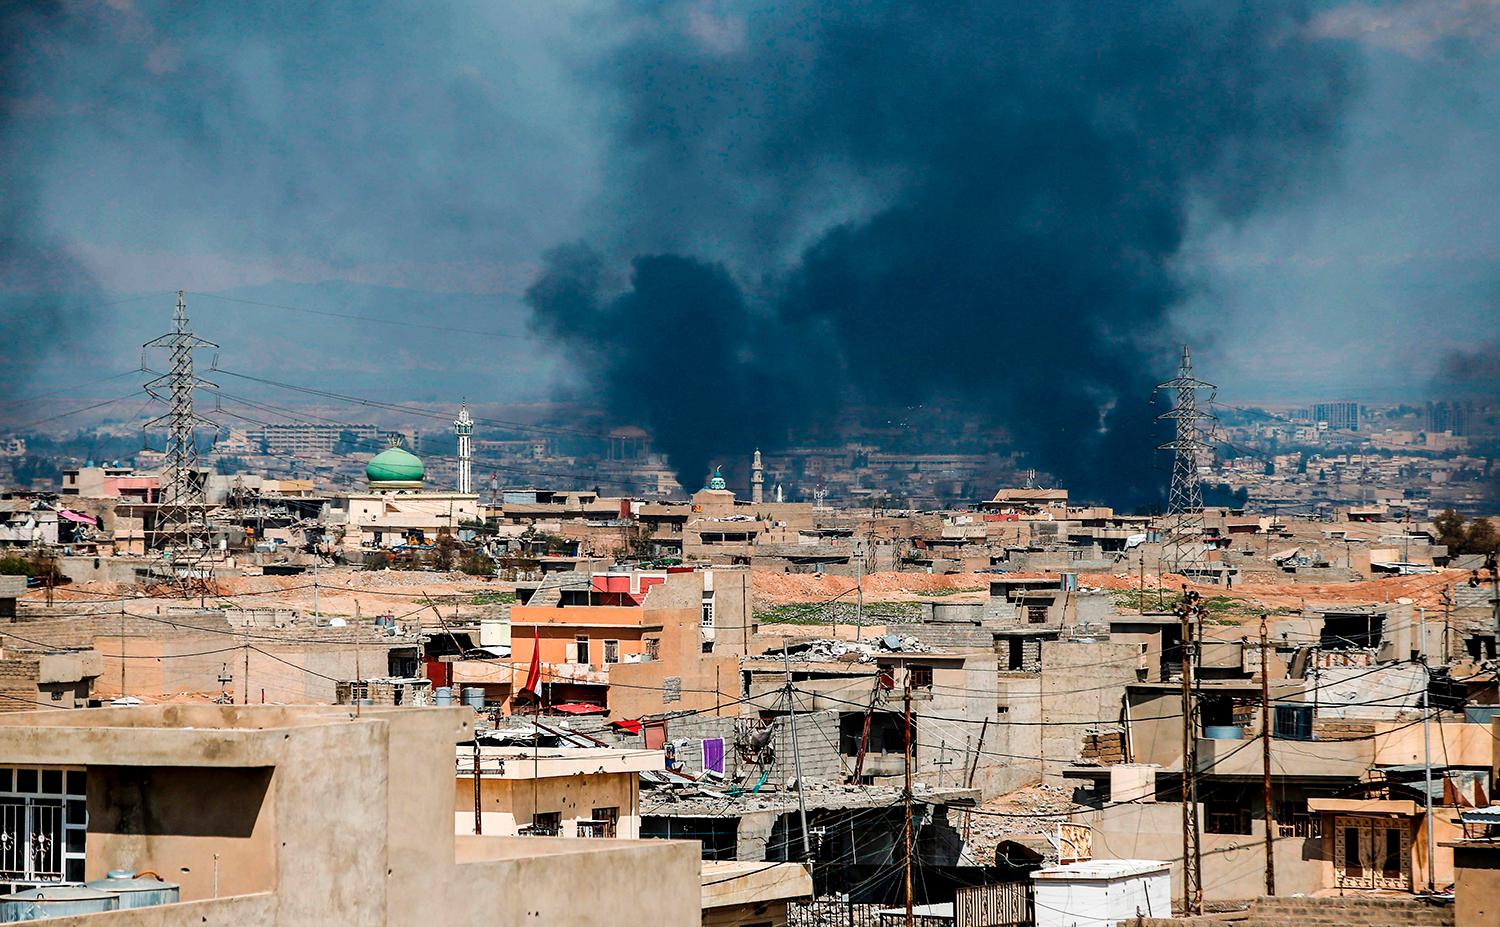 Mosul har aldrig kvalat in som en vacker stad – än mindre nu efter IS framfart. Men det kommer bli bättre.